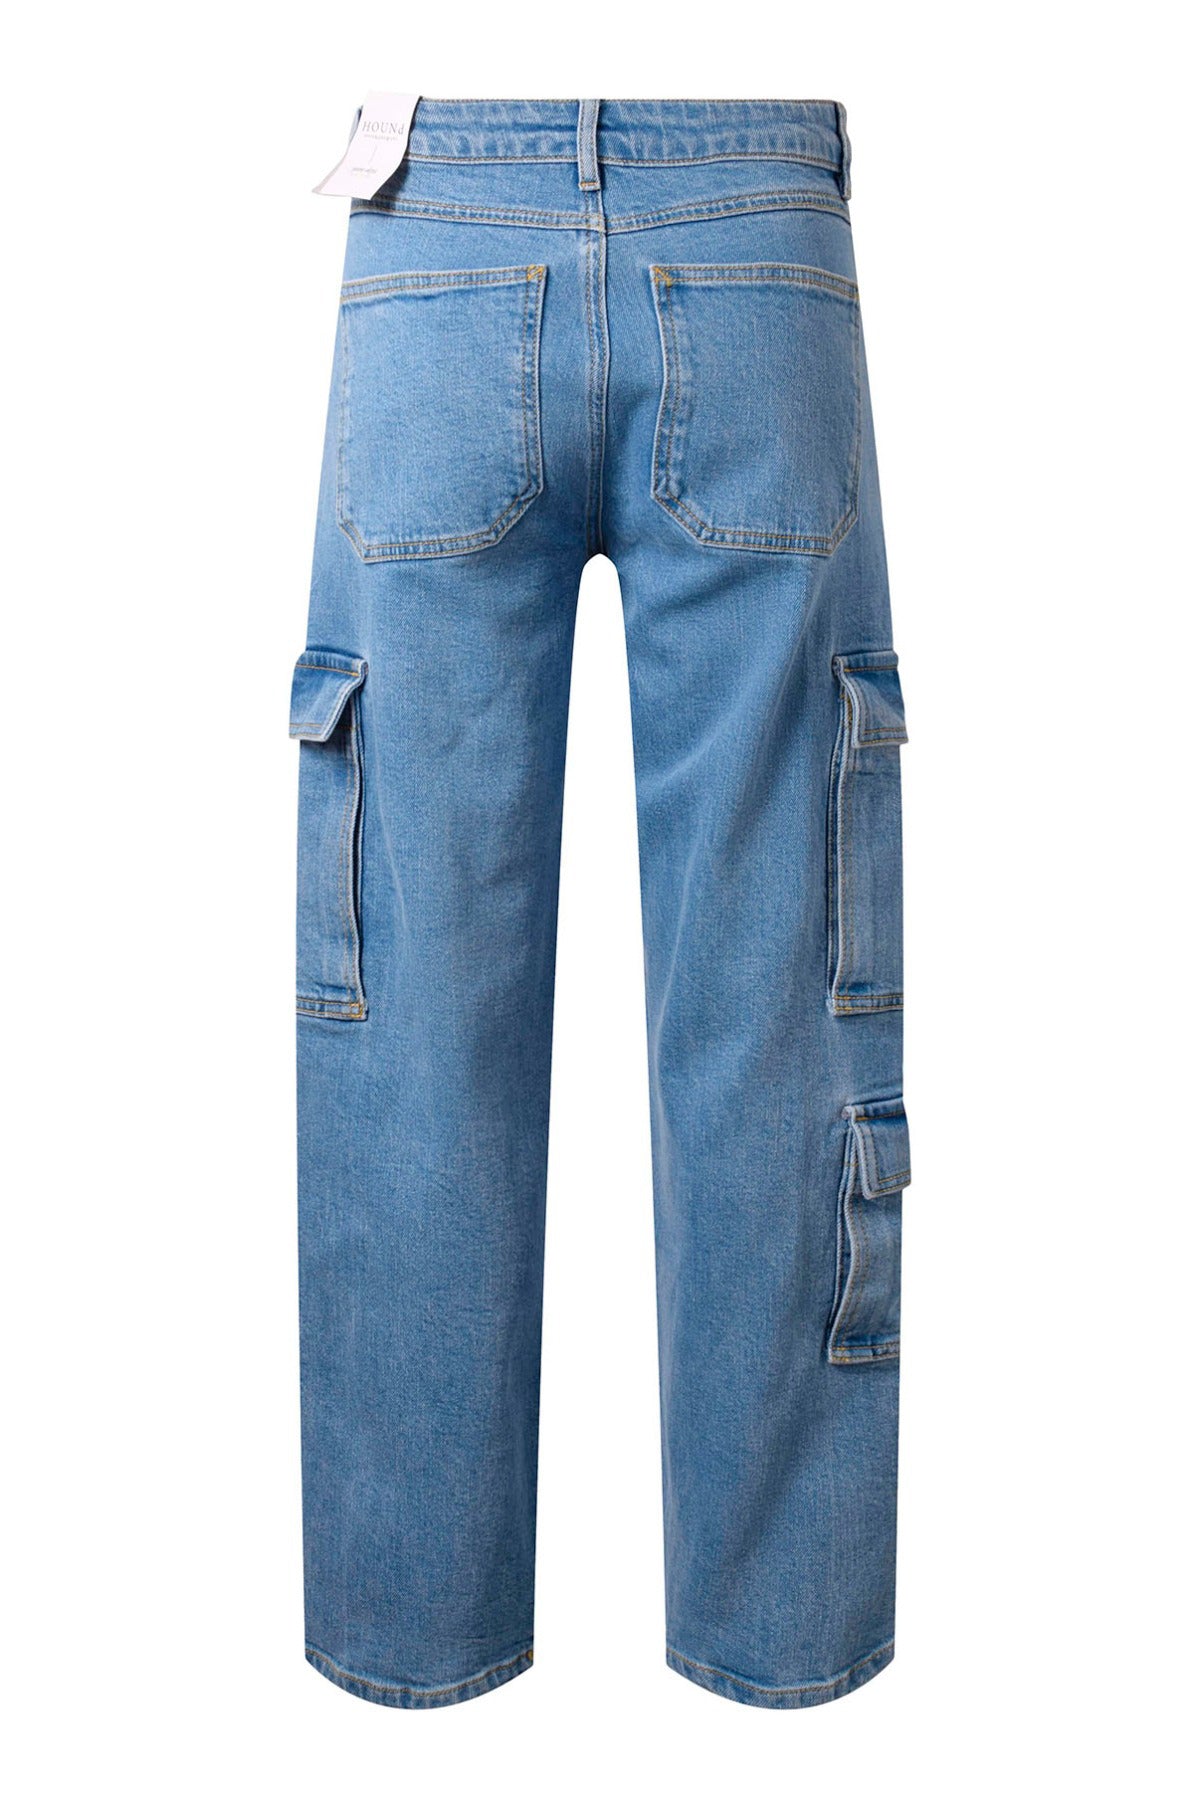 Hound Jeans 3 Pocket cargo